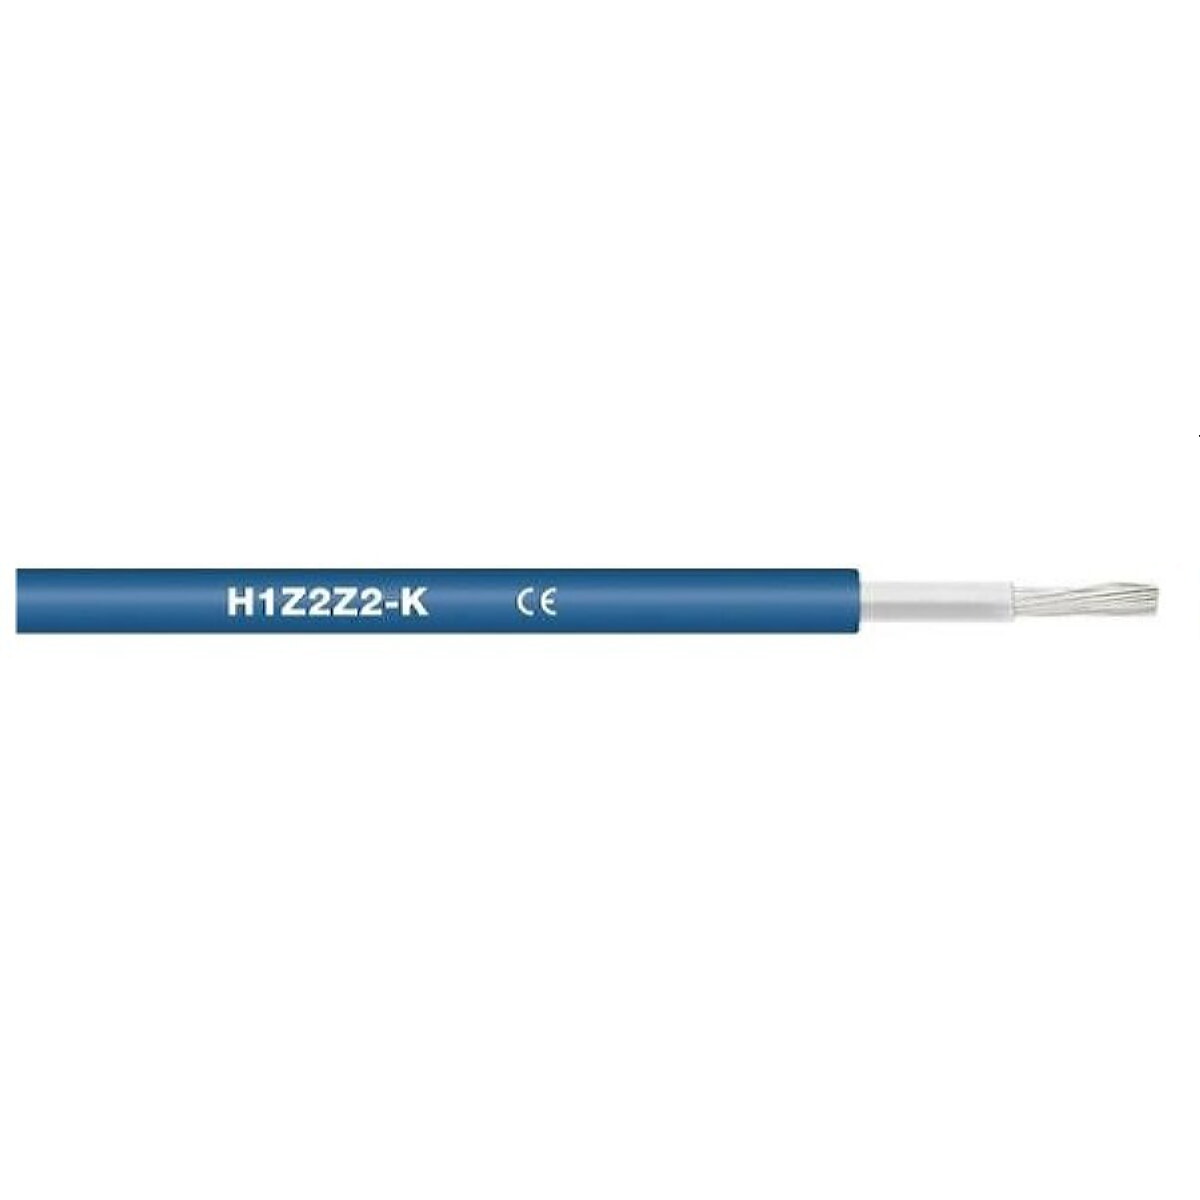 NEUT Solarkabel H1Z2Z2-K 1x6 mm² SP500m blau erdverlegbar EN50618